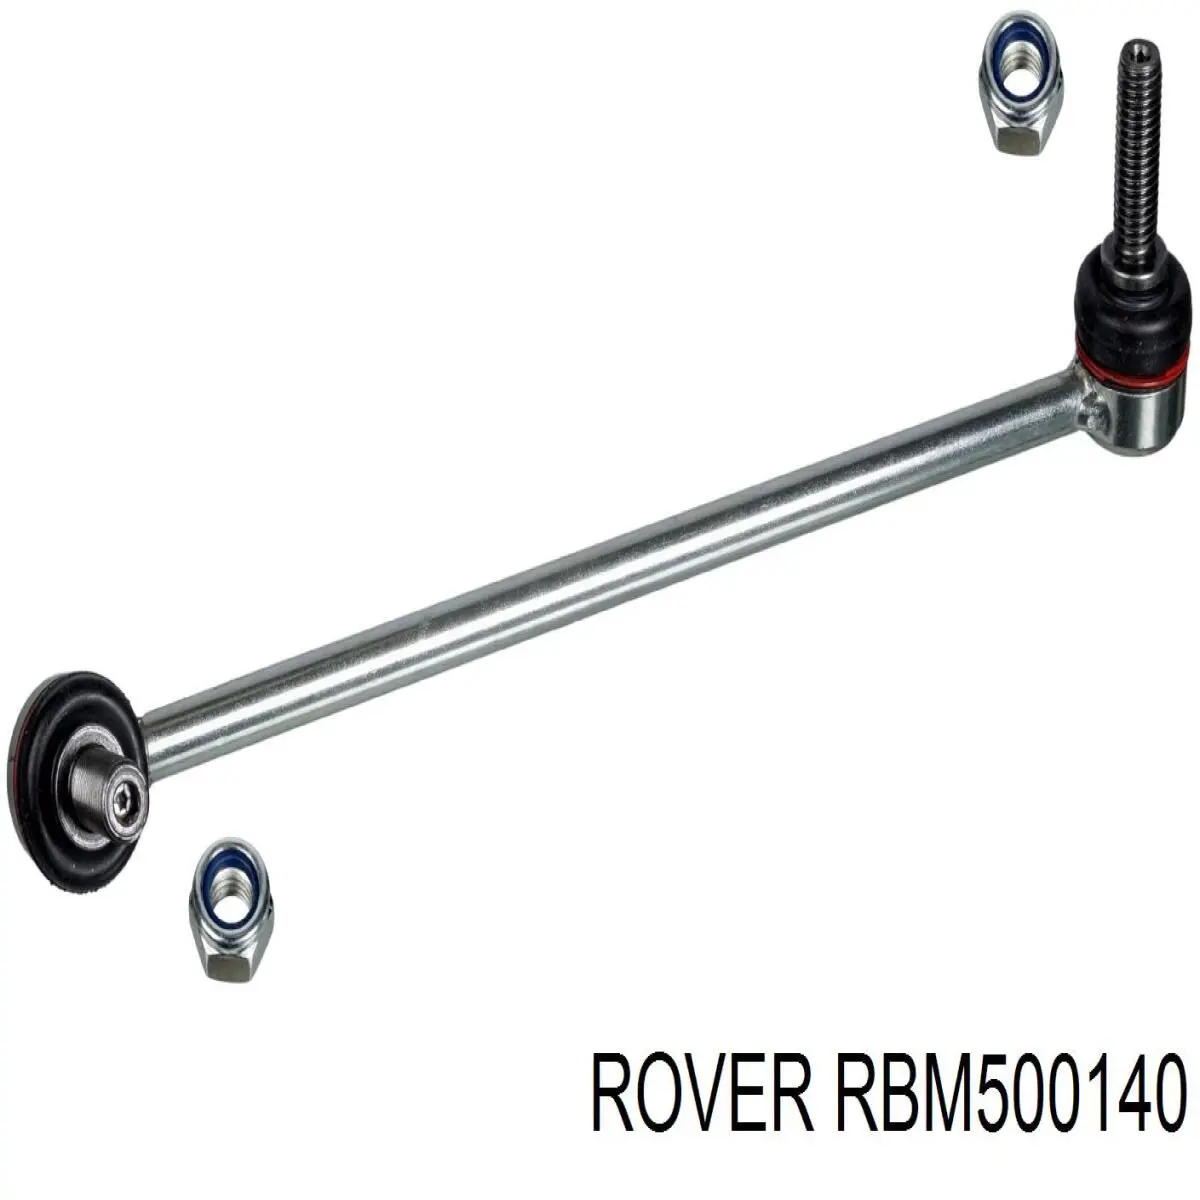 RBM500140 Rover barra estabilizadora delantera derecha